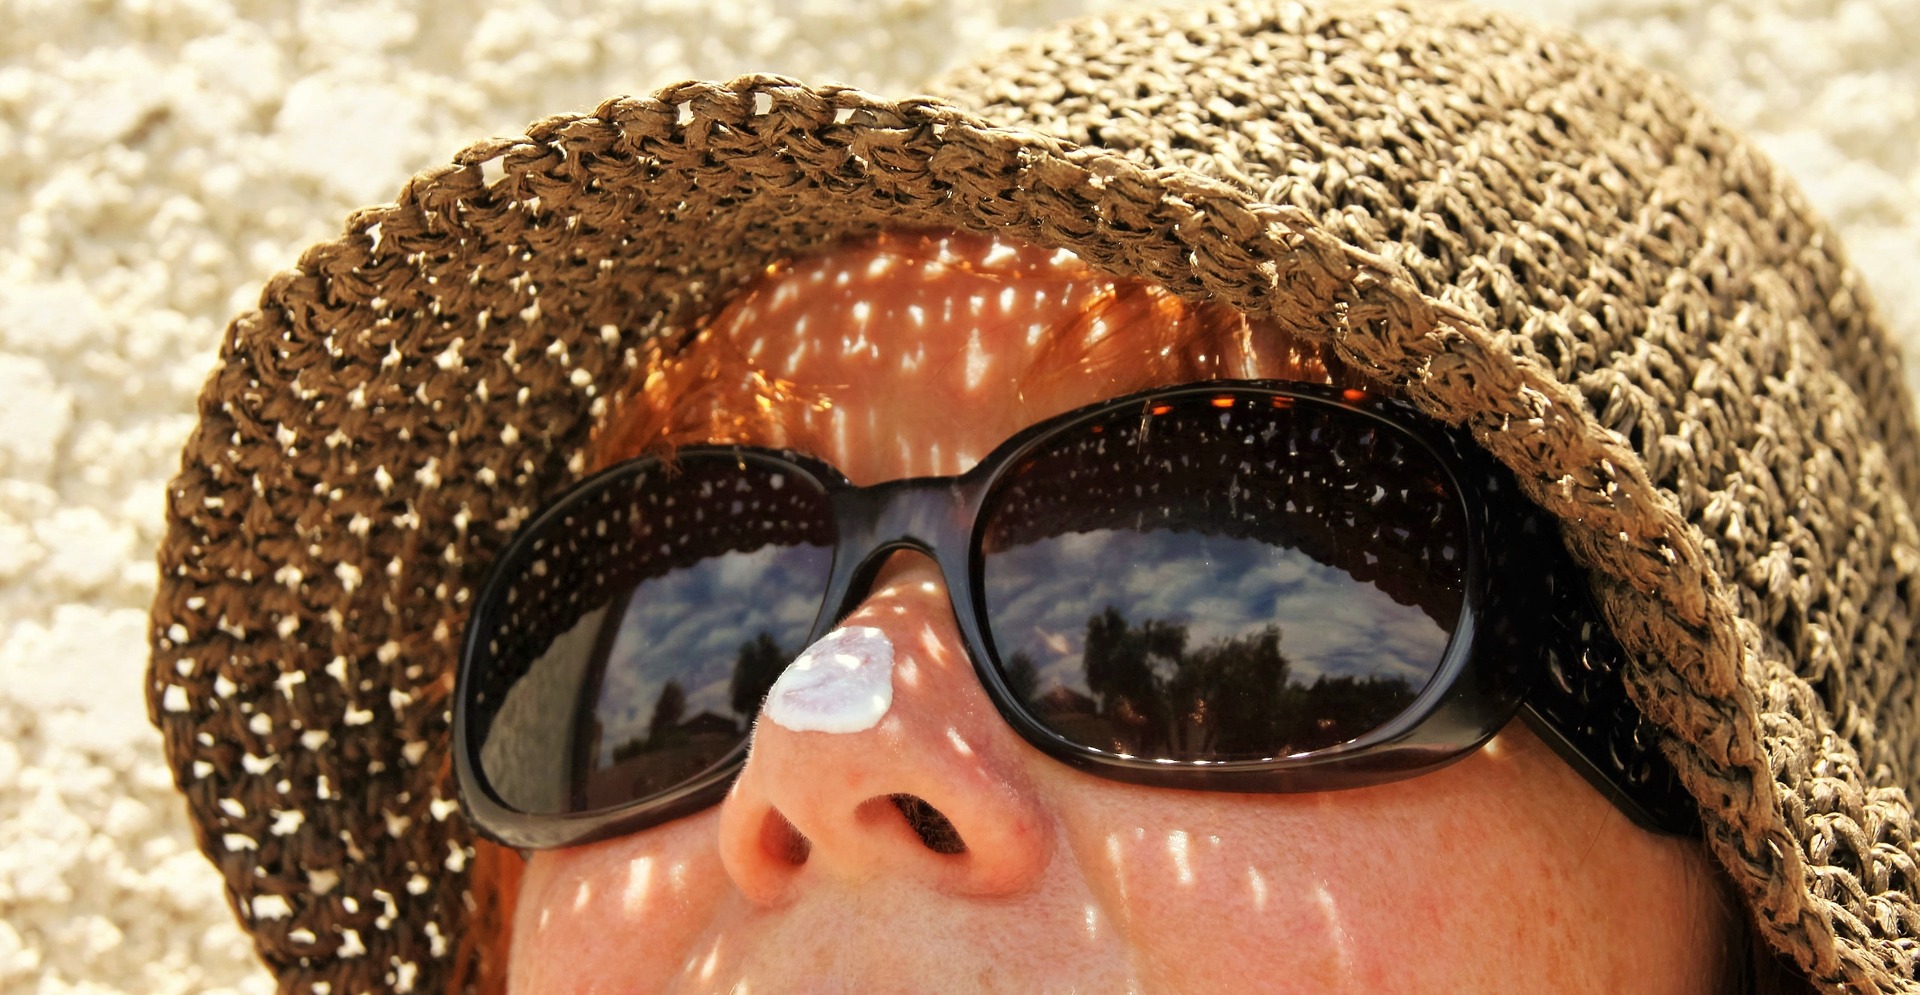 Bingung Cara Reapply Sunscreen saat Pakai MakeUp? Intip Tips Ini Aja!